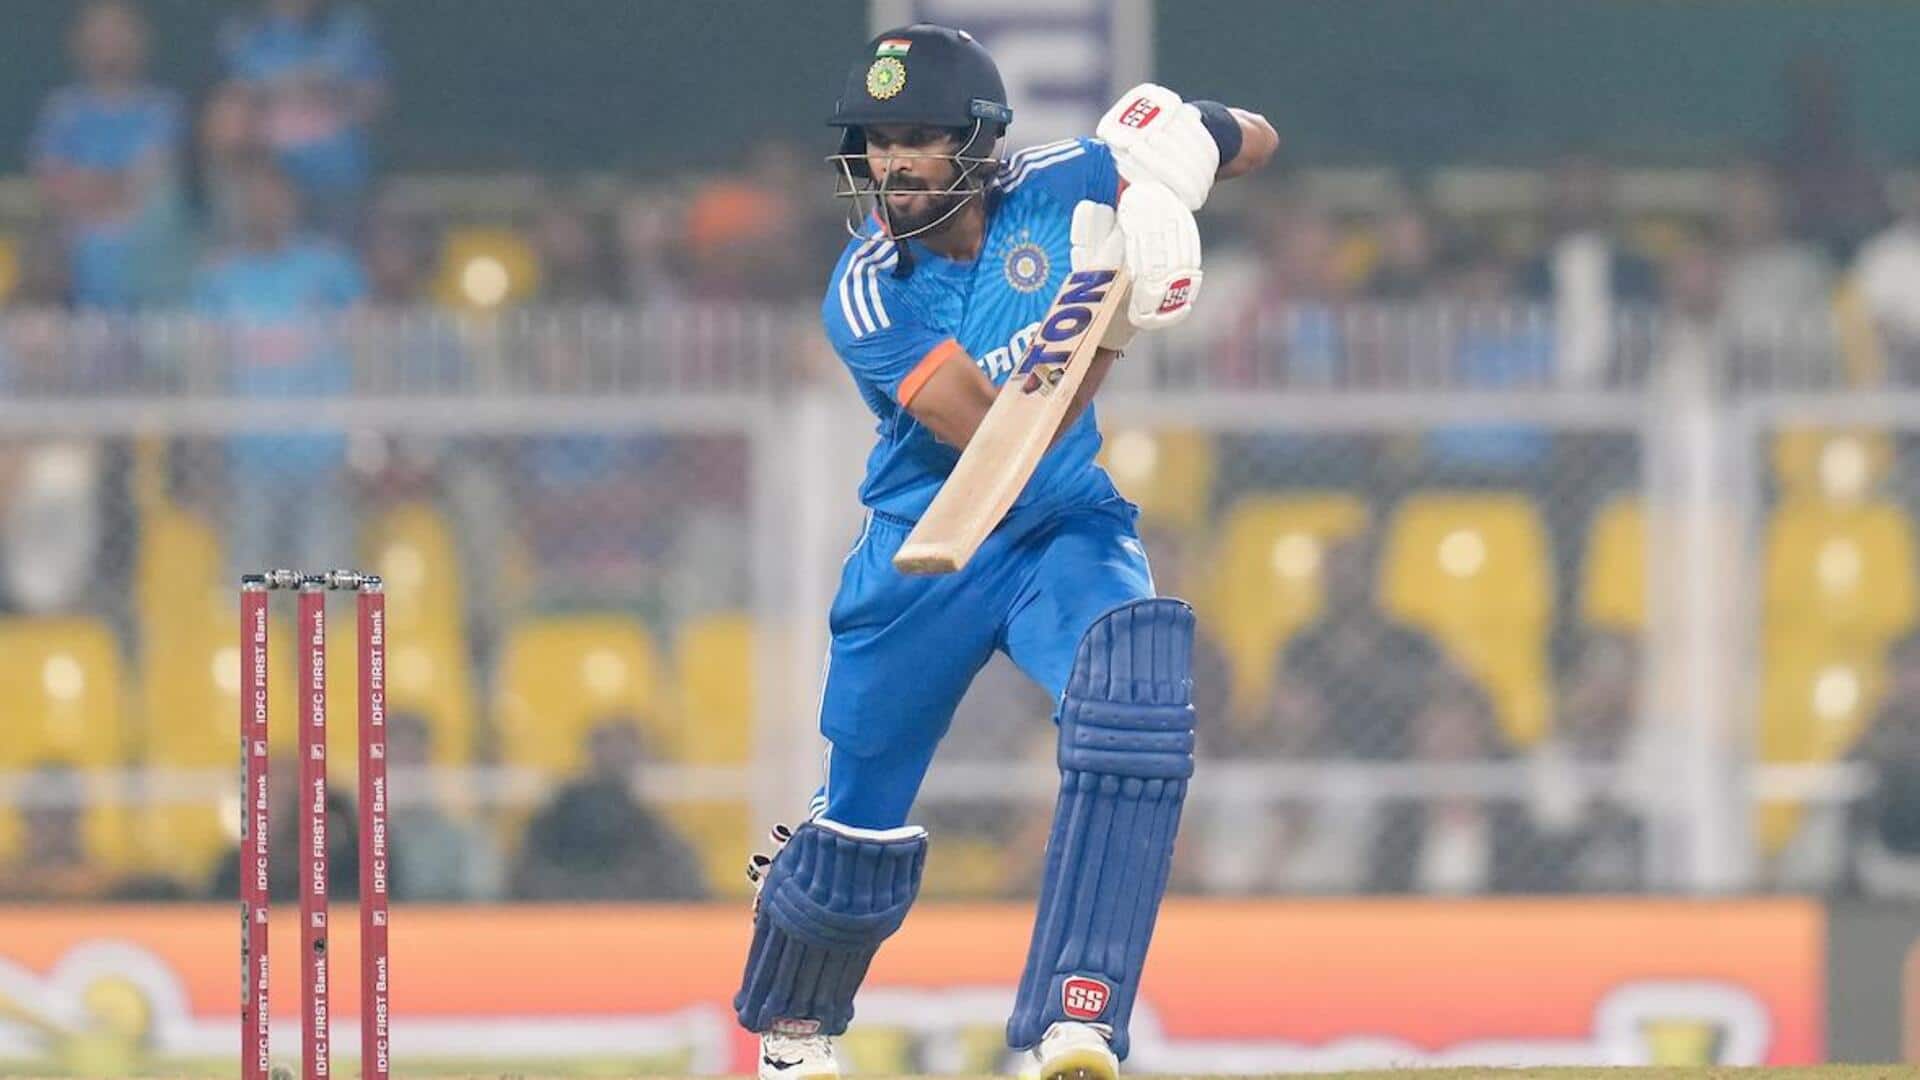 रुतुराज गायकवाड़ टी-20 अंतरराष्ट्रीय में दूसरे सर्वाधिक व्यक्तिगत स्कोर बनाने वाले भारतीय बल्लेबाज बने